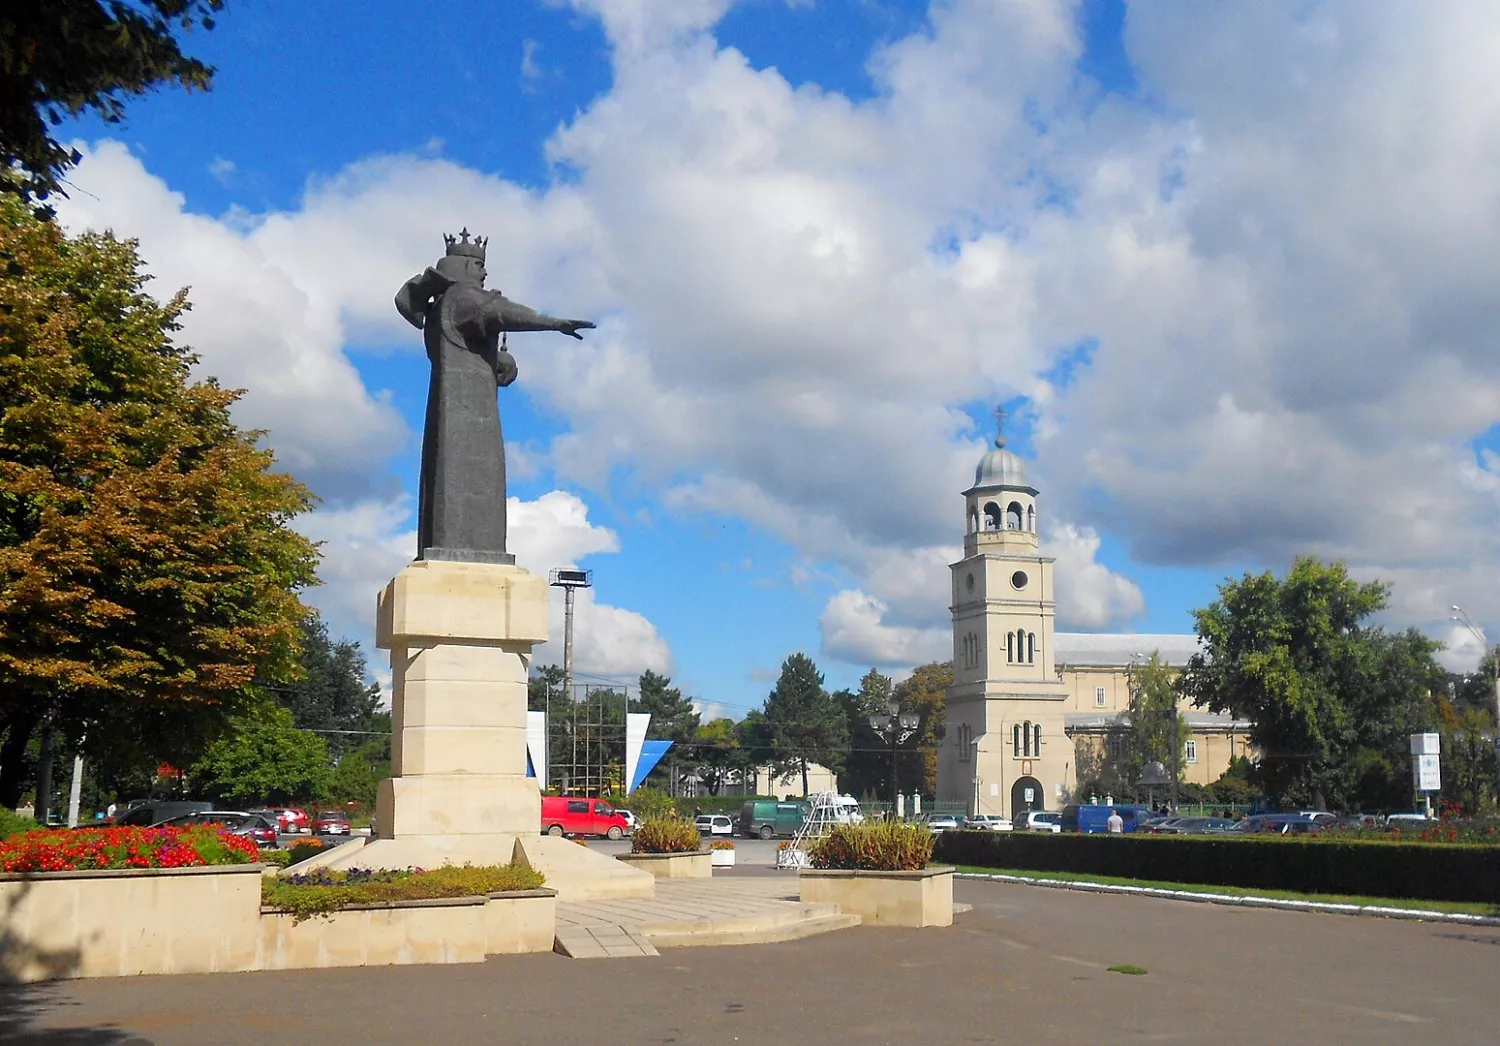 Piața Independenței - Independence Square - Bălți - Moldova